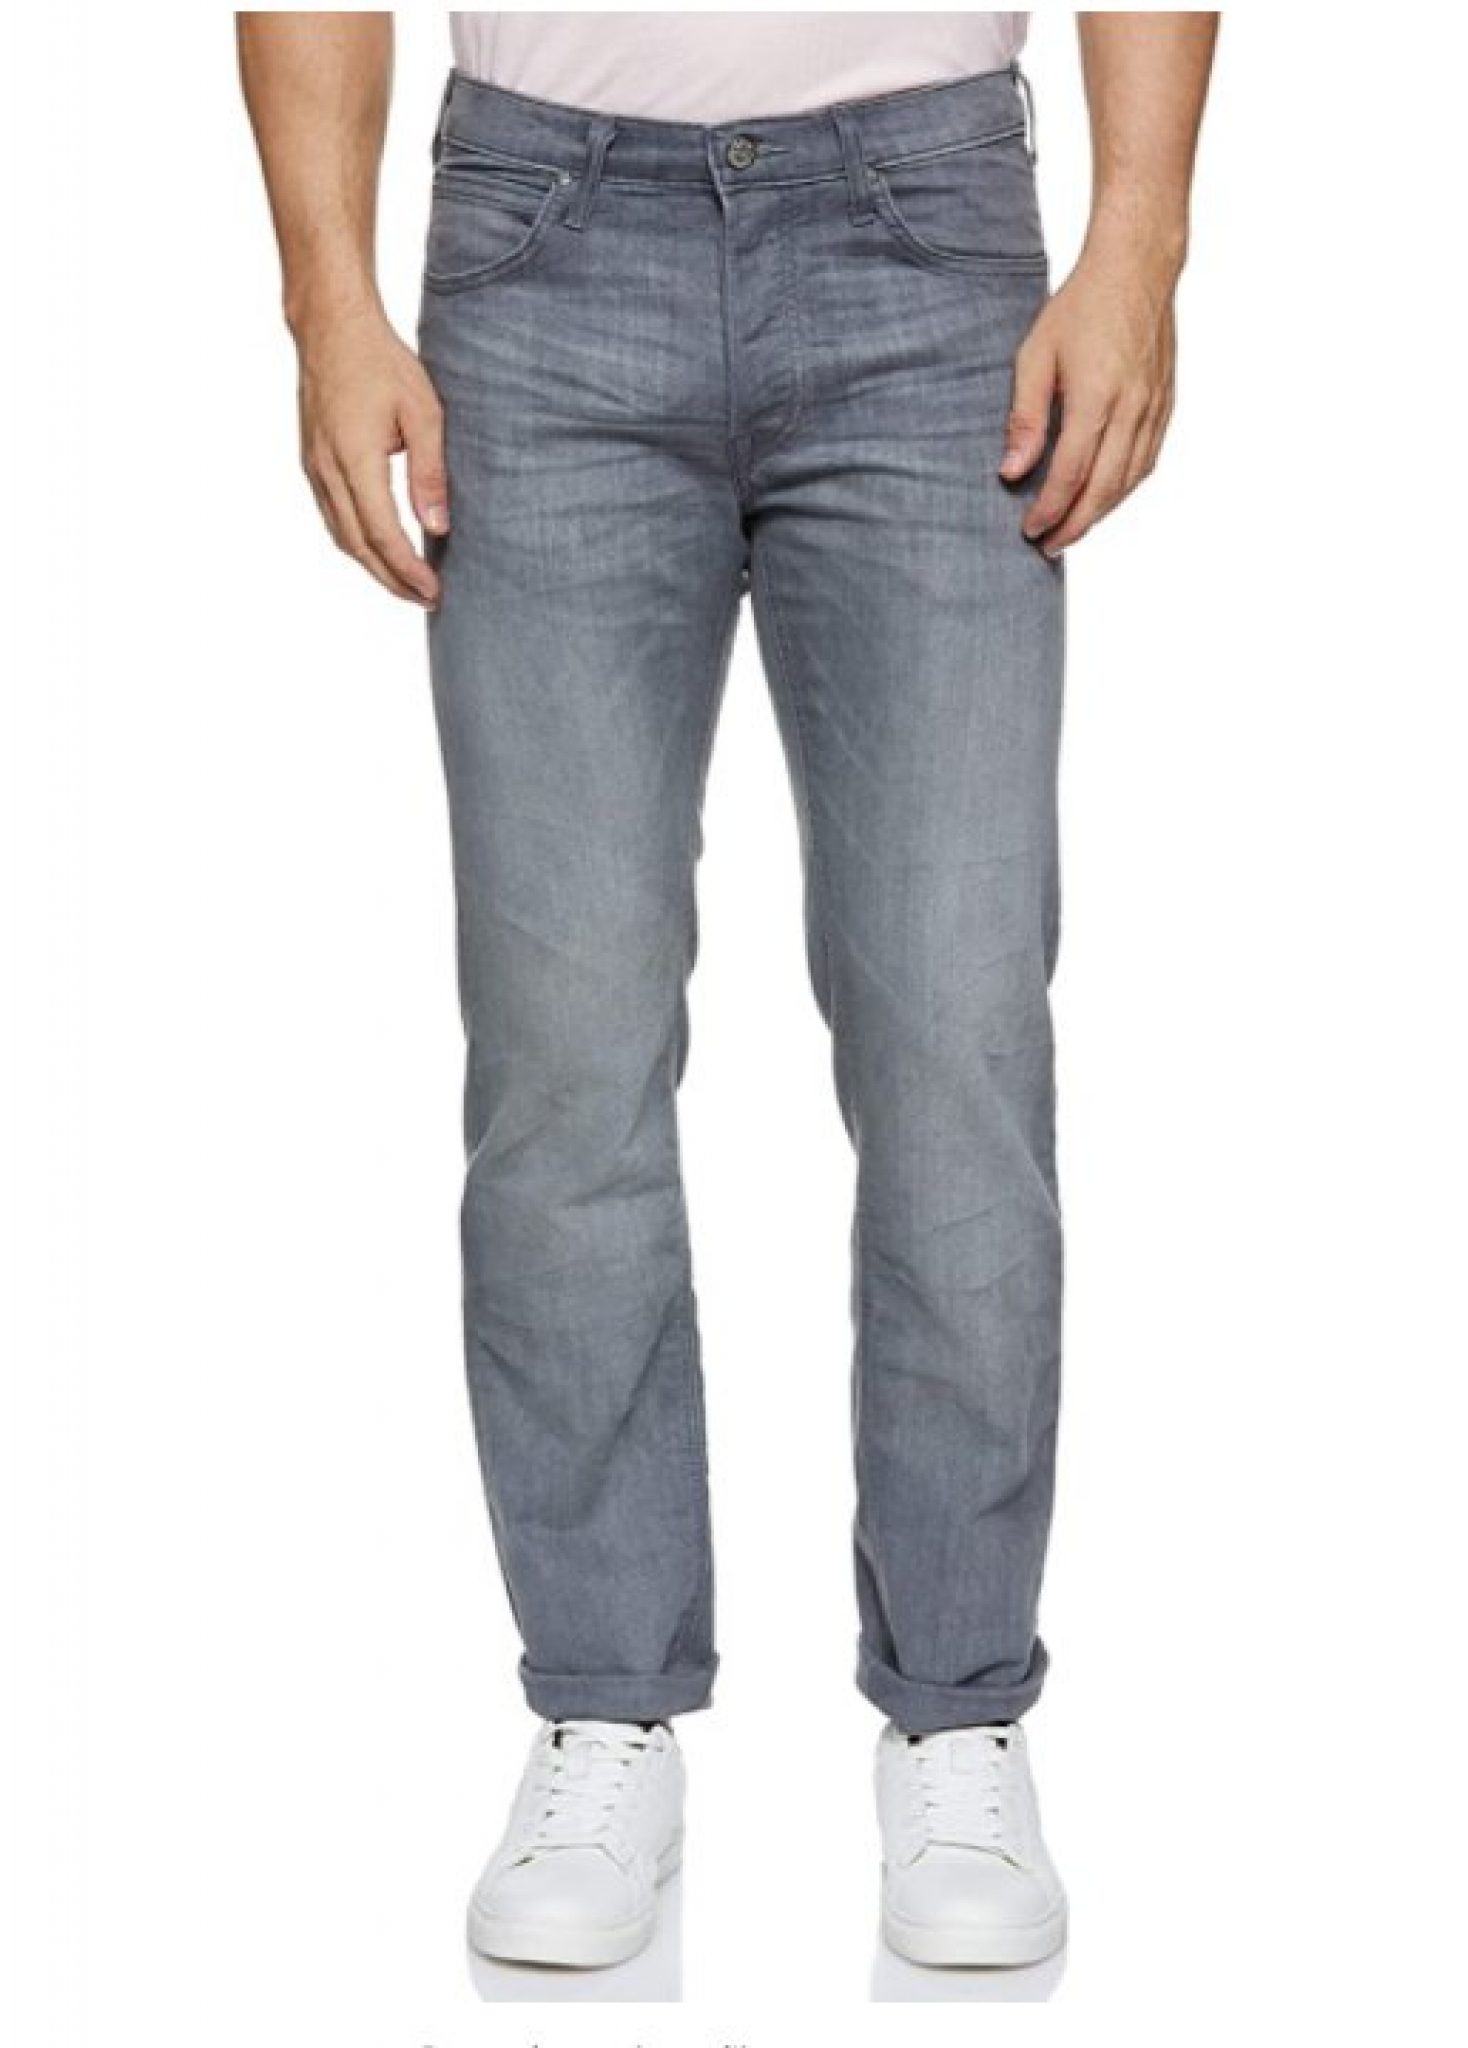 Pas cher à 47.9€ le jeans pour hommes LEE DAREN